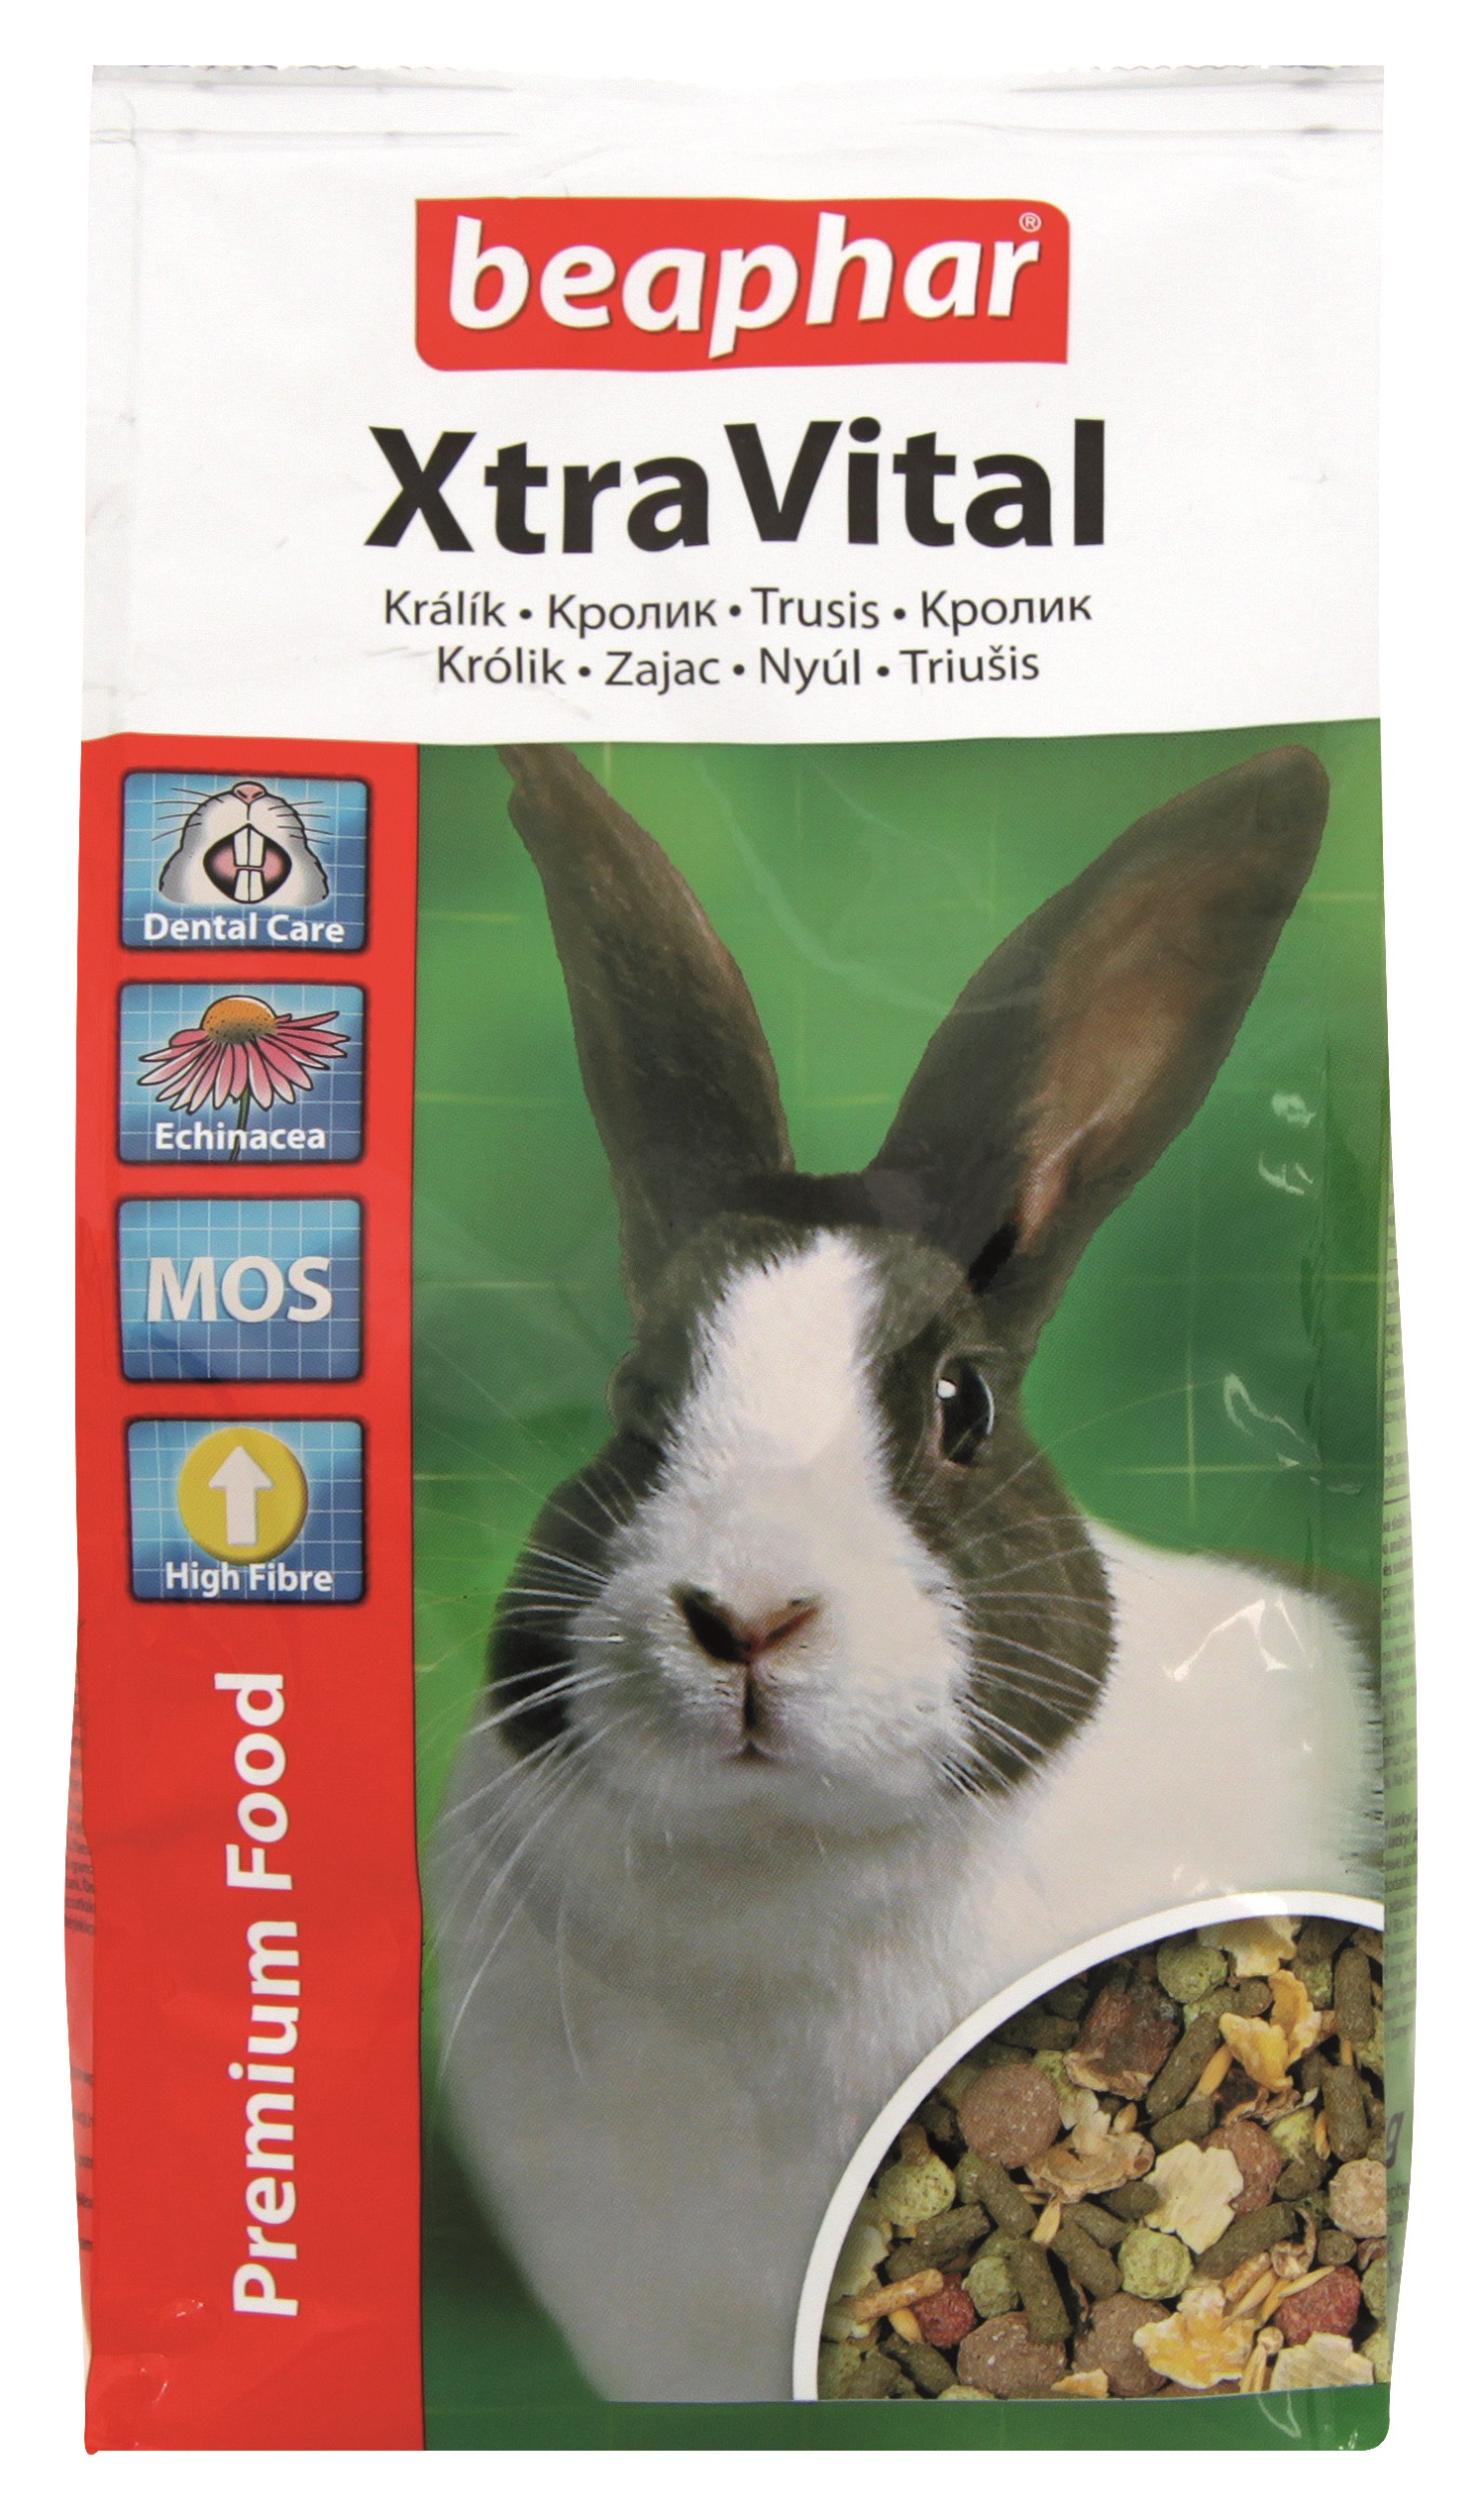 Фото - Інші зоотовари Beaphar Xtra vital Rabbit pokarm dla królika 2.5 kg 